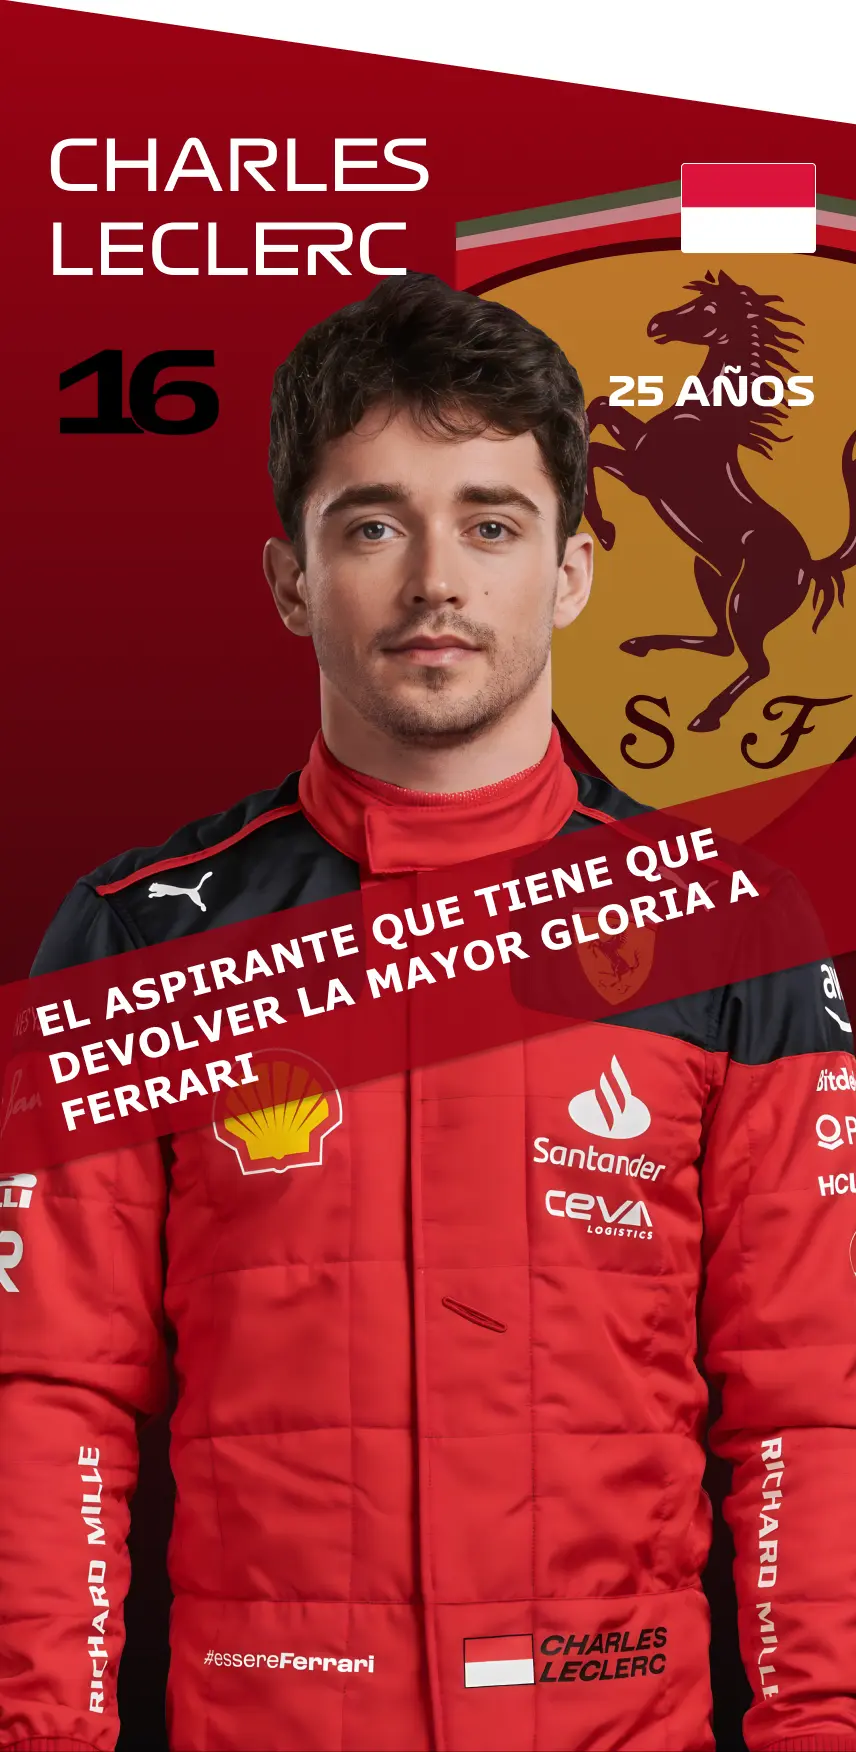 Leclerc: El aspirante que tiene que devolver la mayor gloria a Ferrari